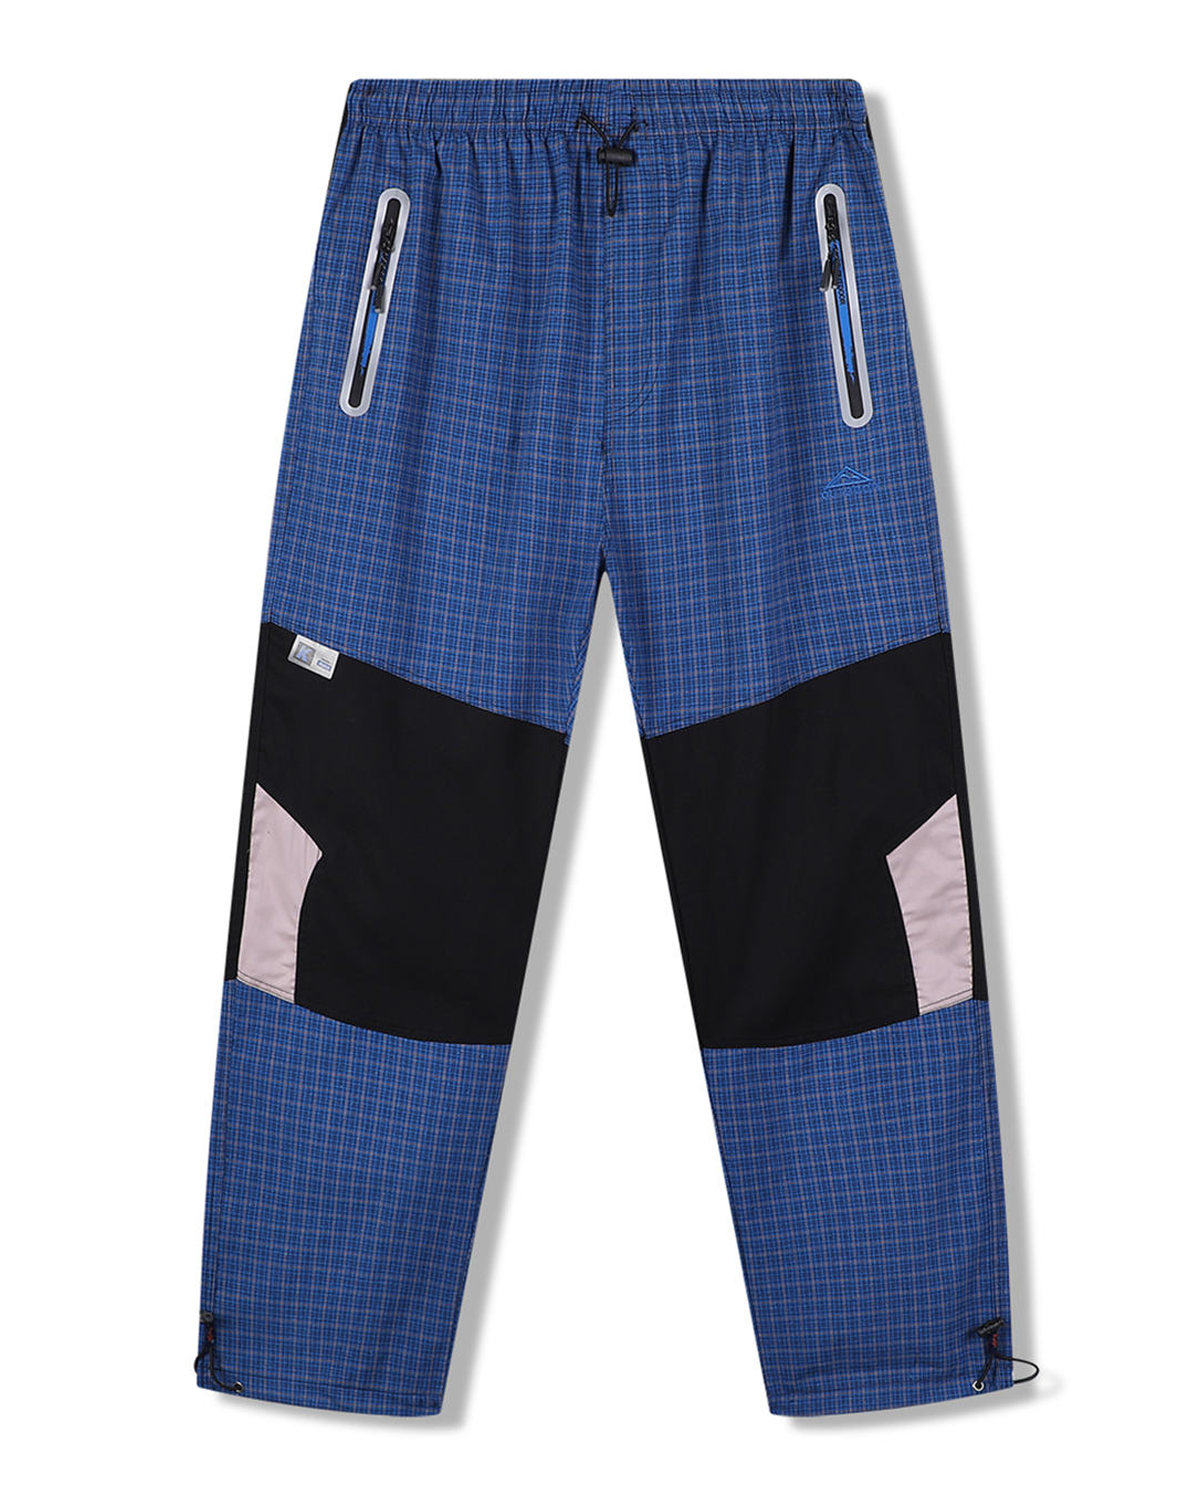 Pánské plátěné kalhoty - KUGO FK7610, modrá Barva: Modrá, Velikost: M